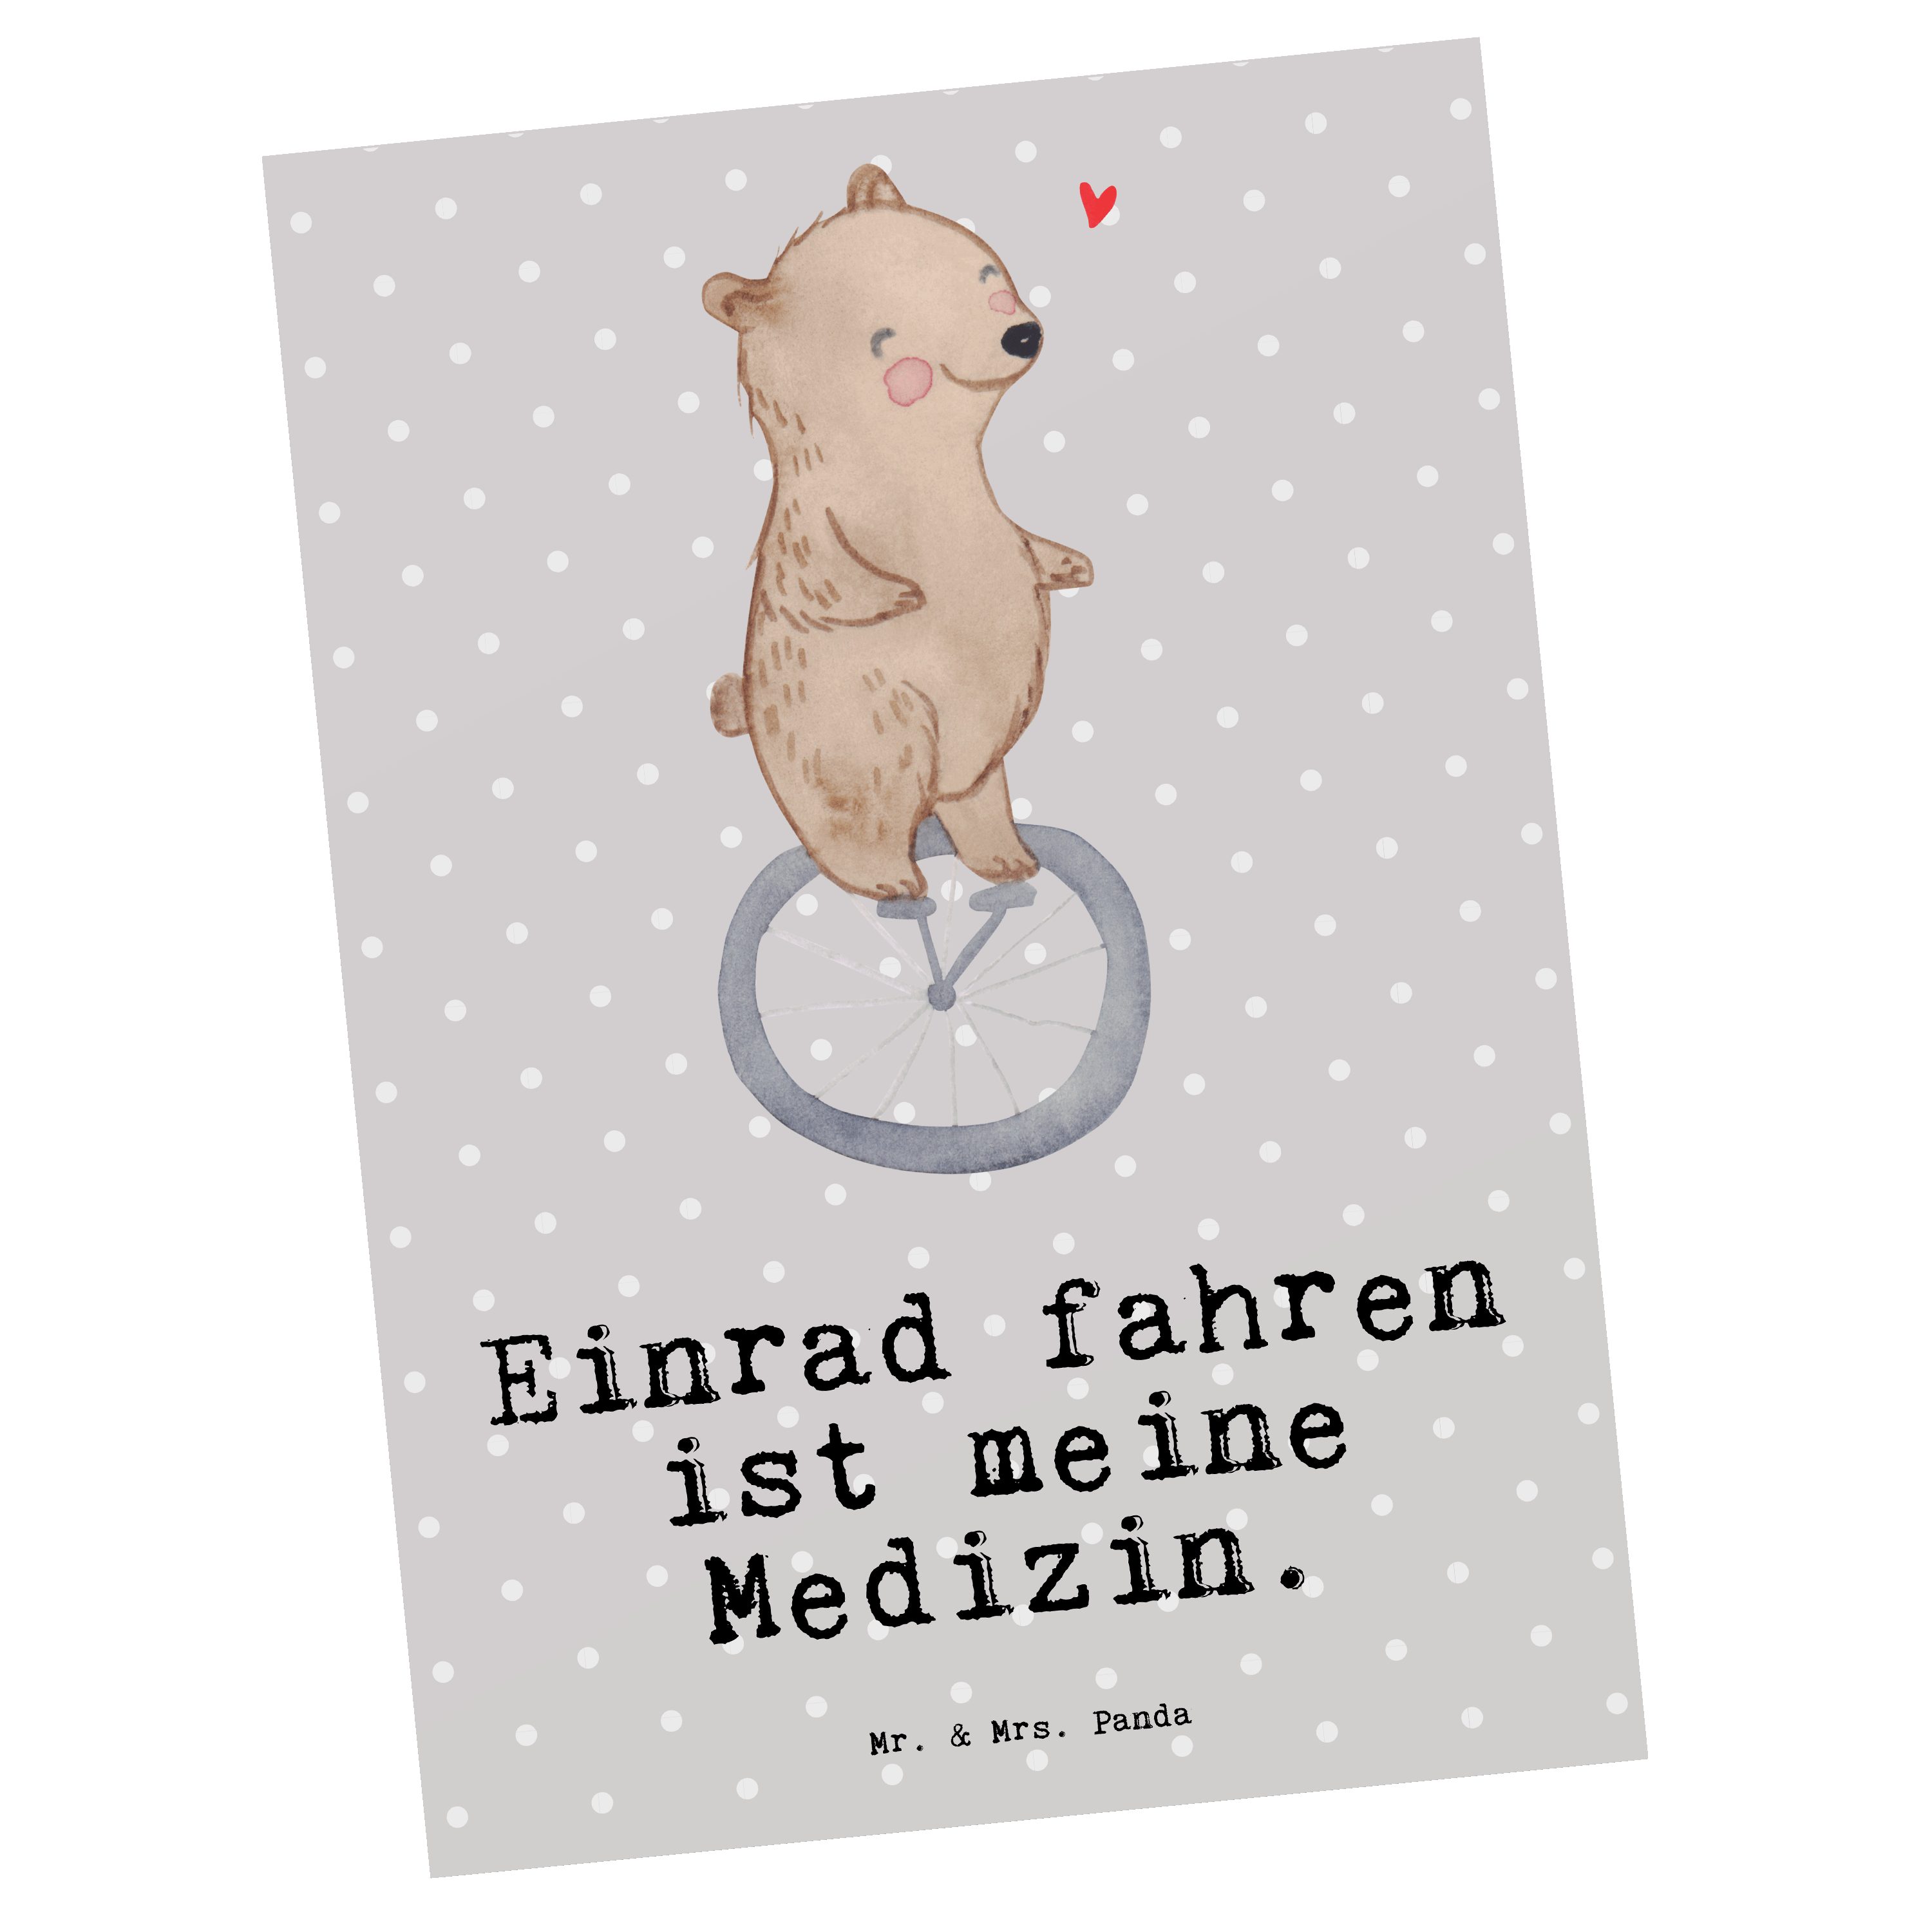 Mr. & Mrs. Panda Postkarte Bär Einrad fahren Medizin - Grau Pastell - Geschenk, Einladung, Gesch